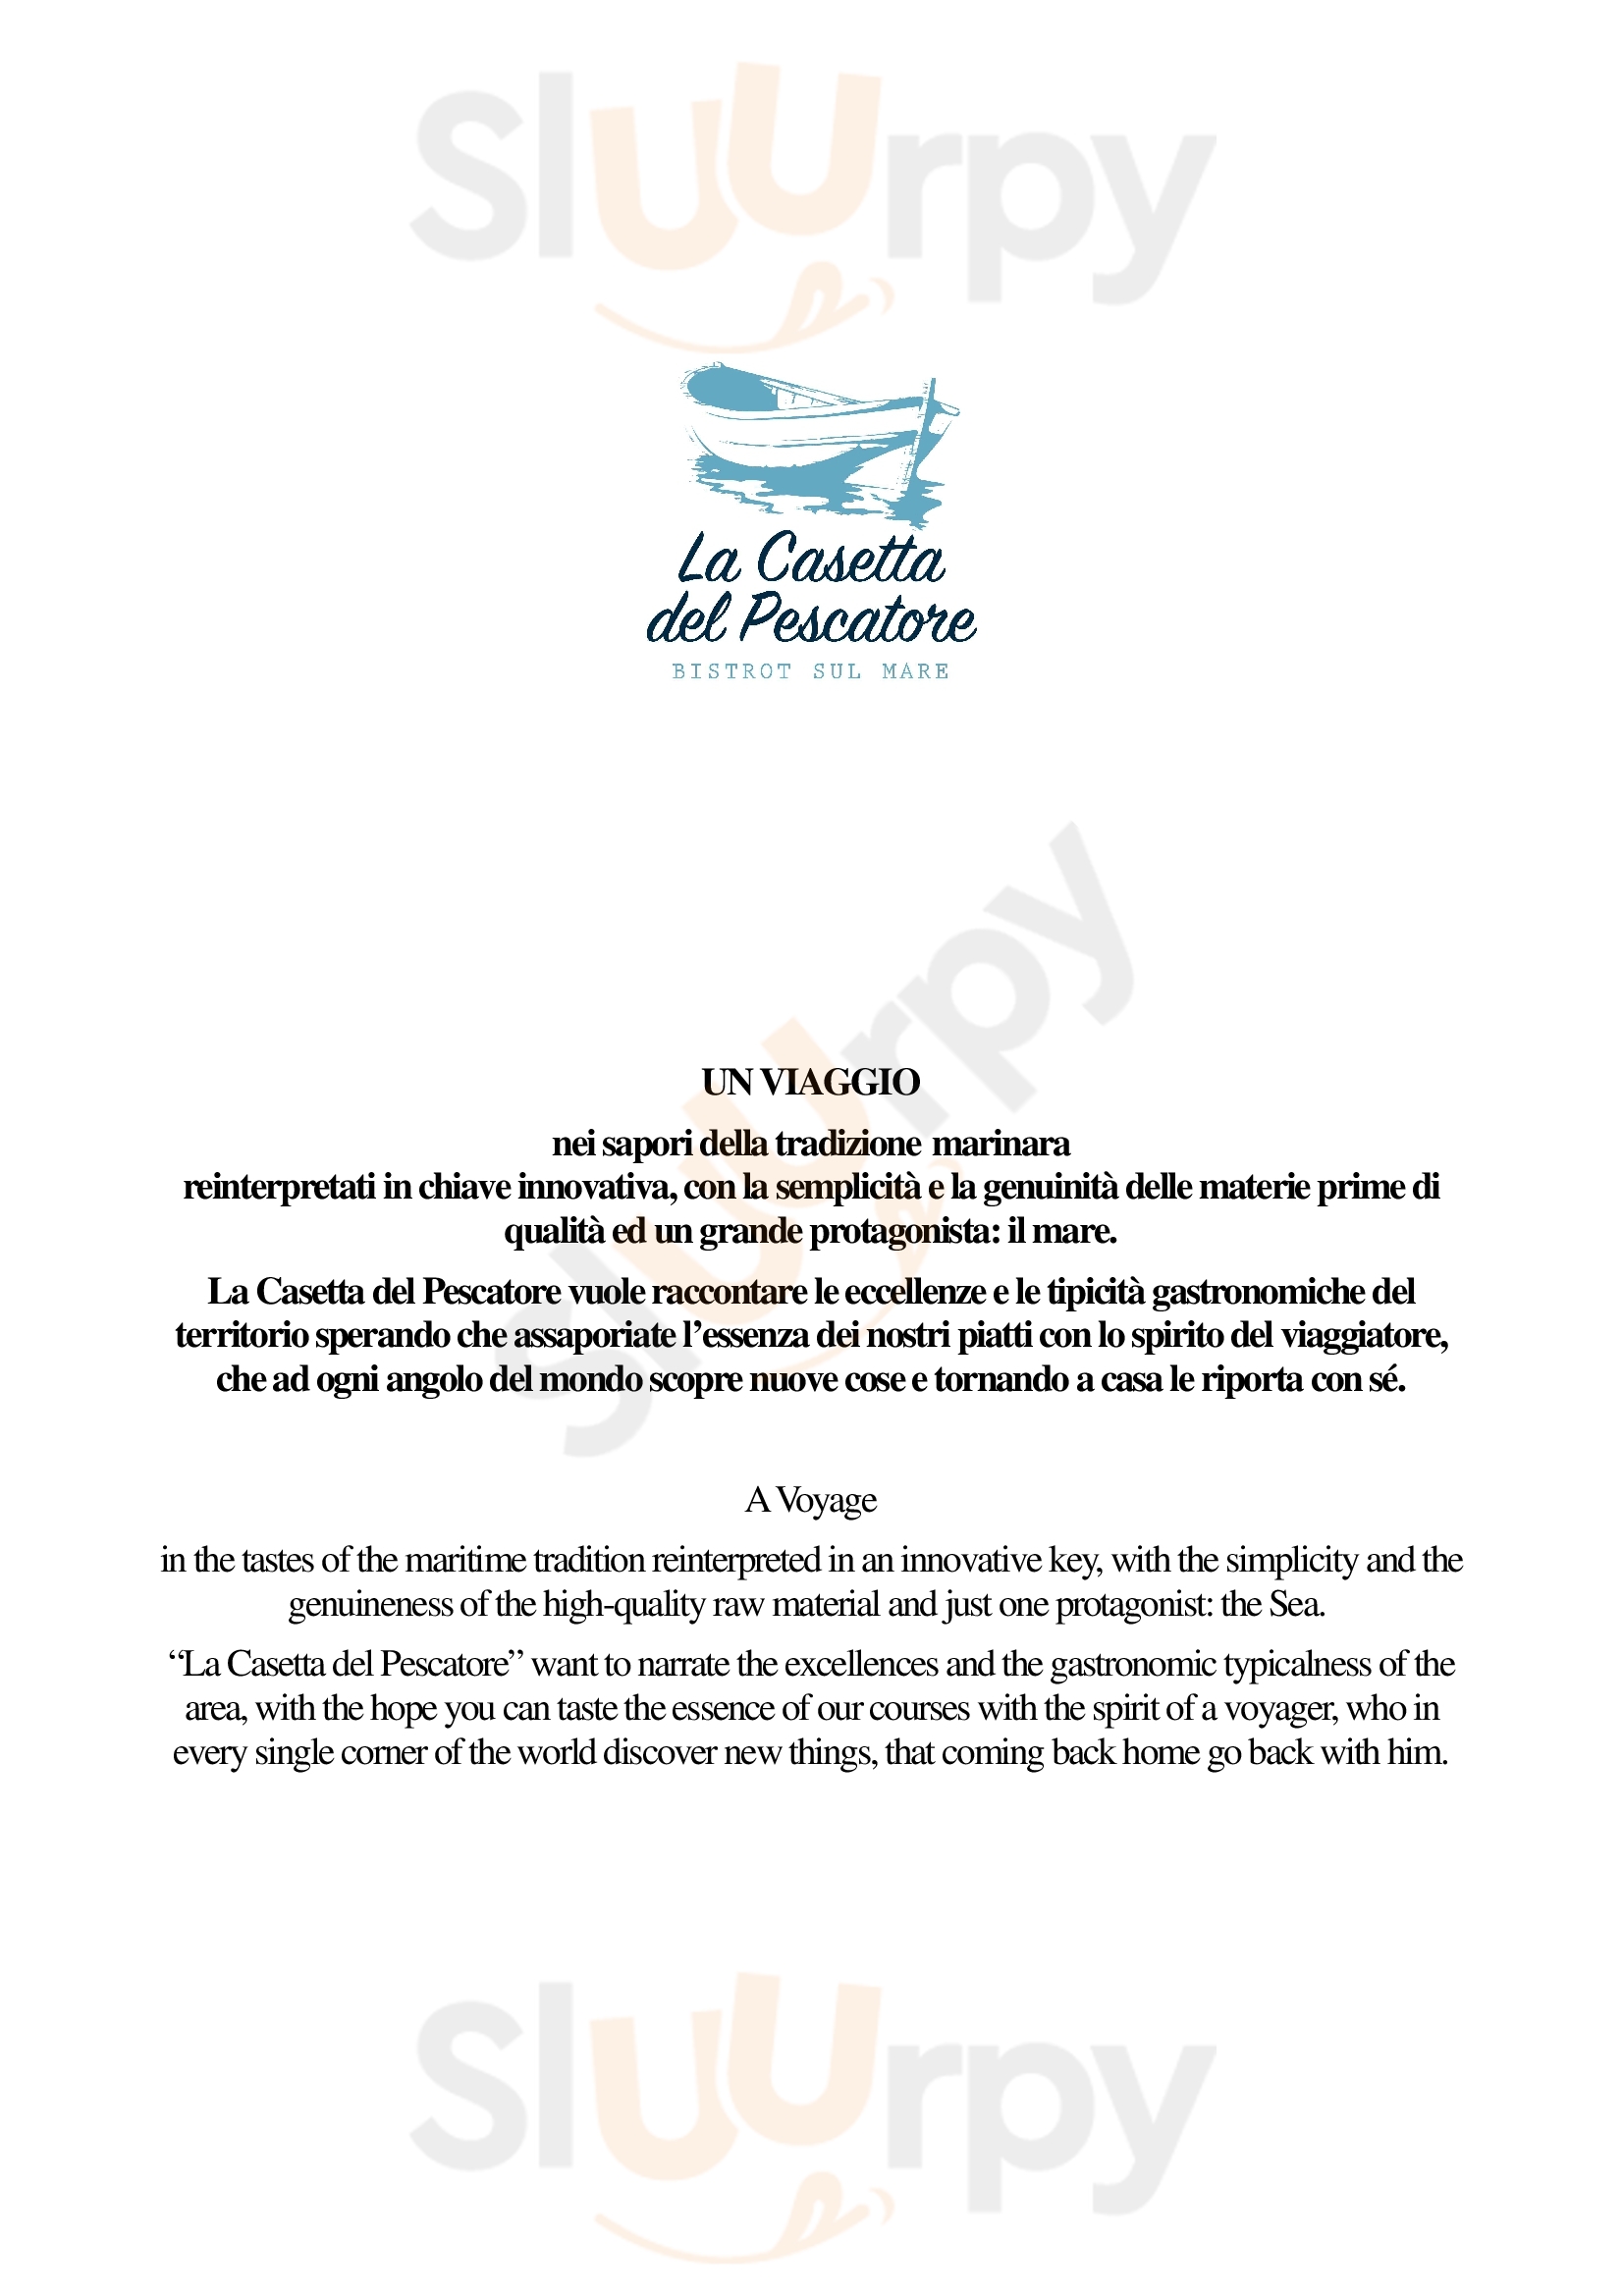 La Casetta Del Pescatore - Bistrot Sul Mare Polignano a Mare menù 1 pagina